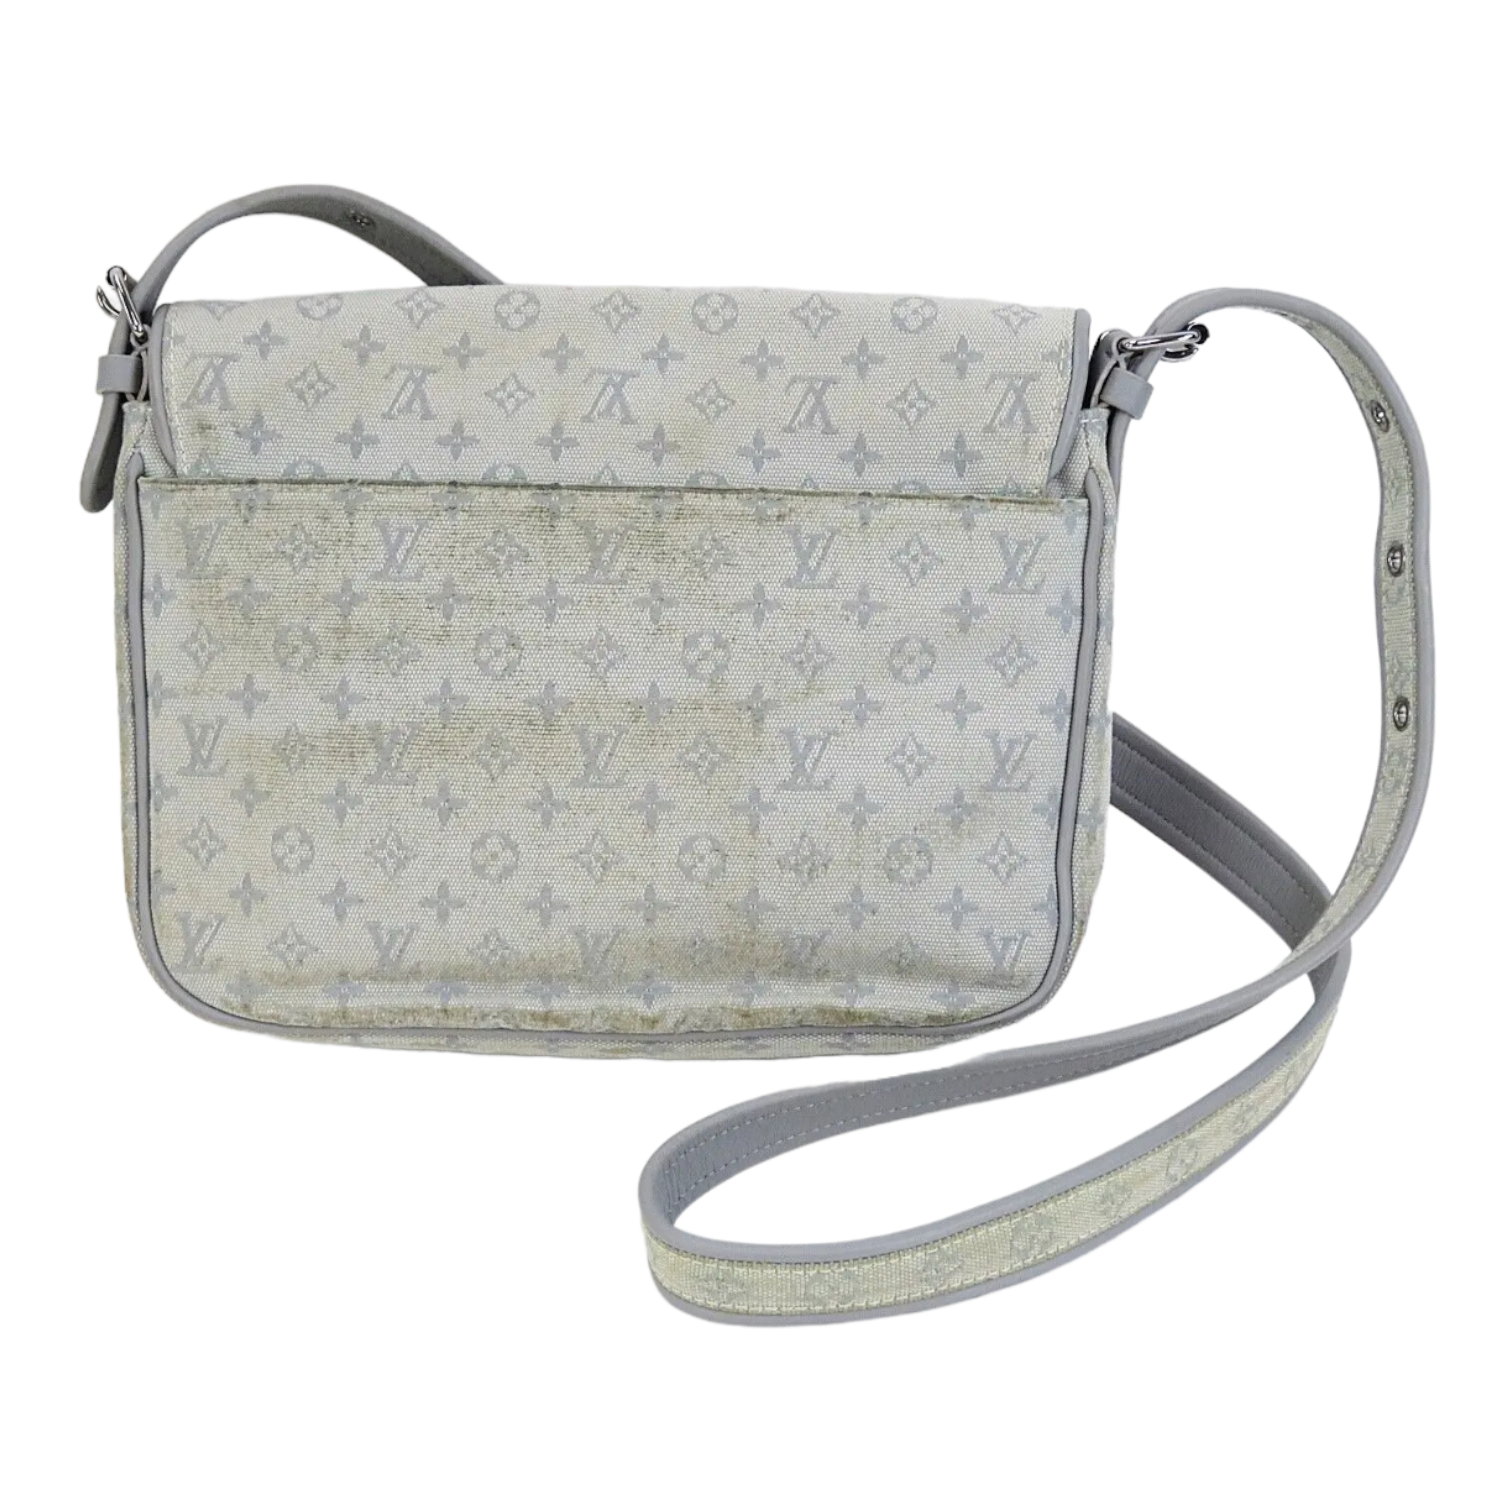 Louis Vuitton Conte de fees Mussette mini Lin shoulder bag – The